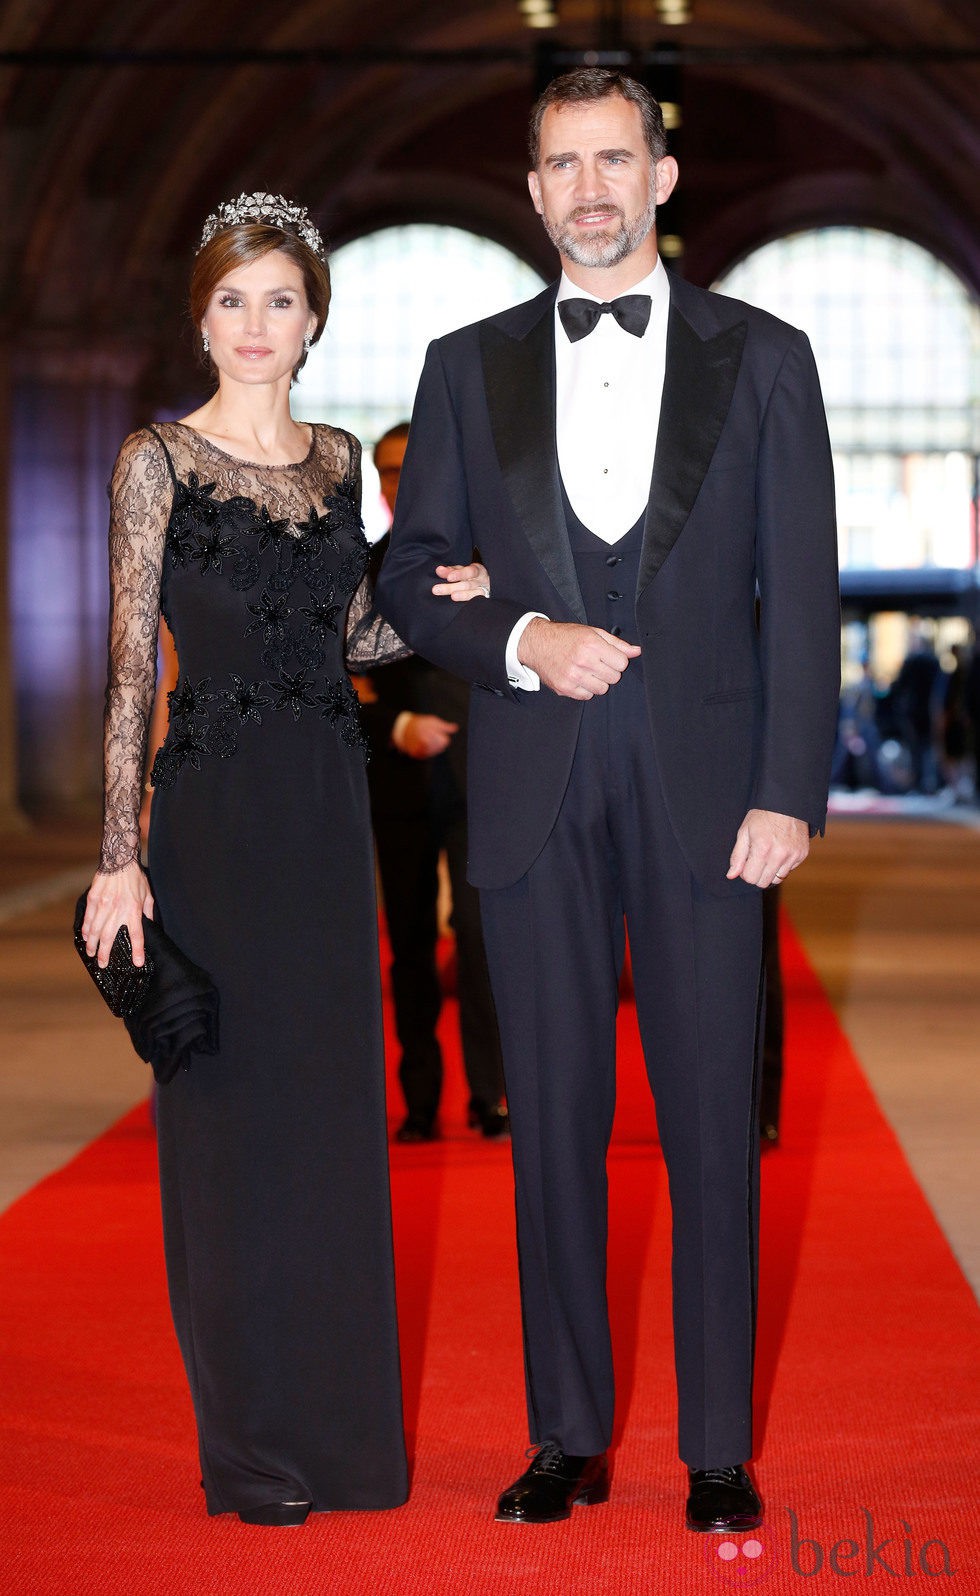 La Princesa Letizia con un vestido negro con detalles de encaje y pedrería